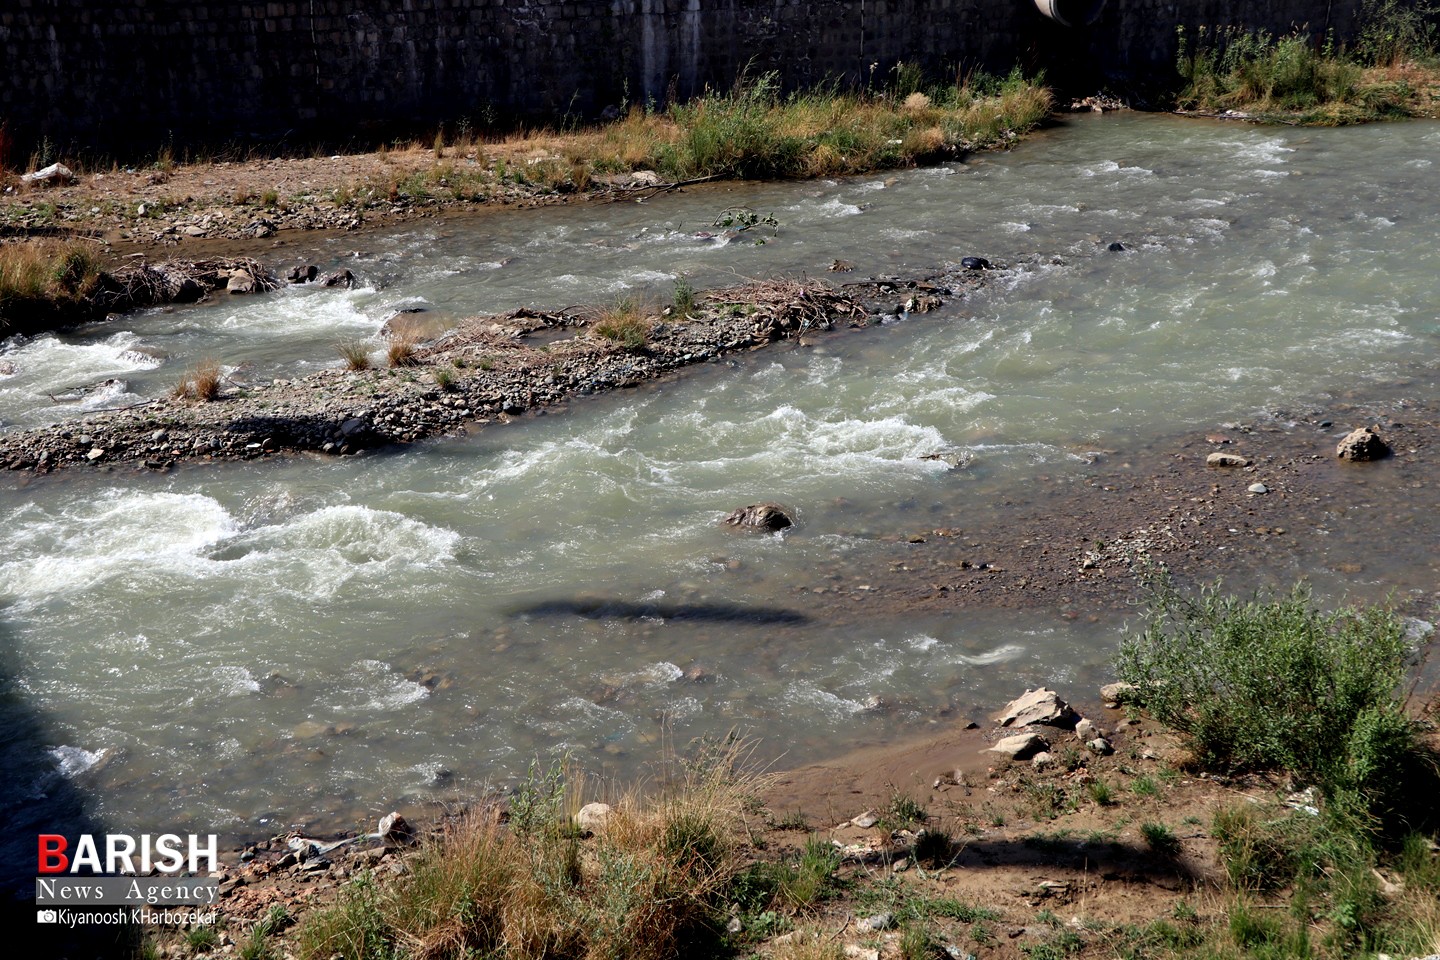 لایروبی رودخانه شهرچایی ارومیه در فراموشی